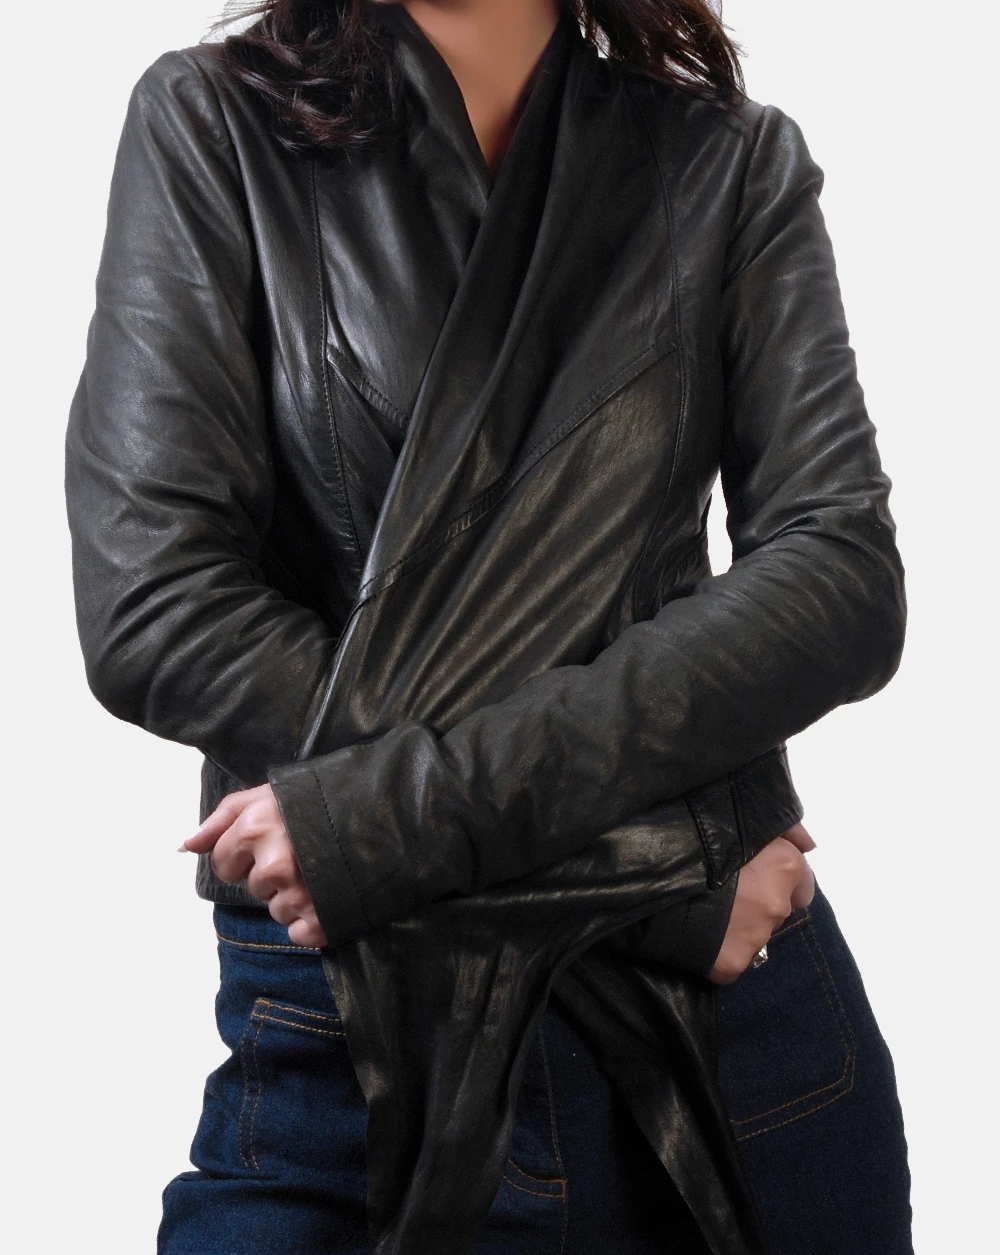 JIJIL unlined womens leather jacket